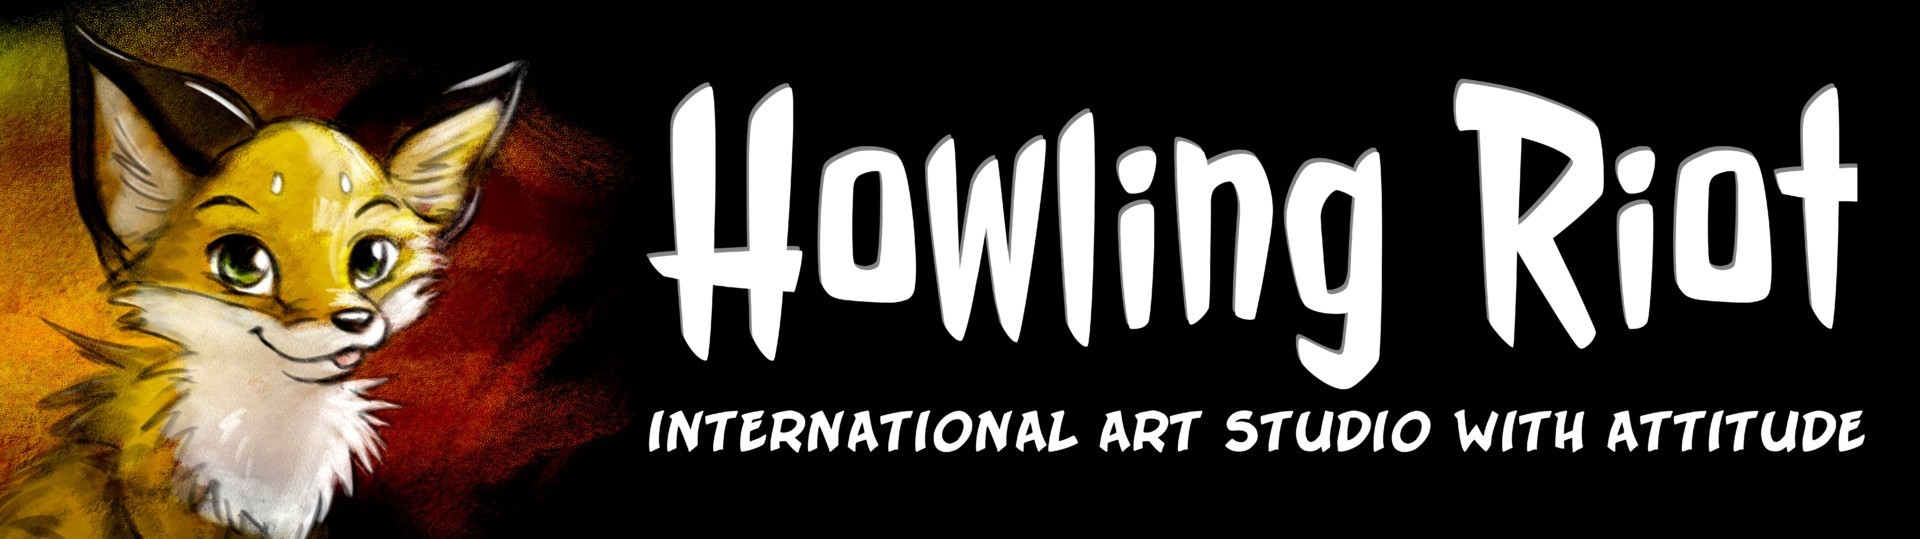 DoKomi_HowlingRiot_B17_logo_banner_2018